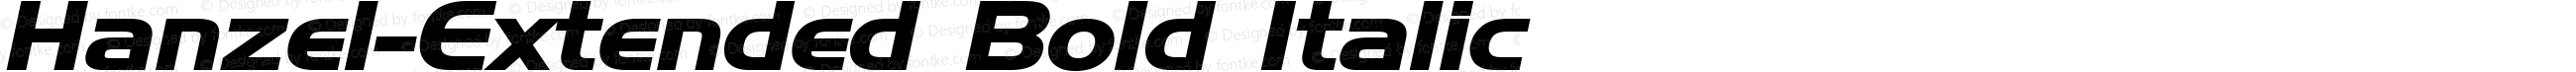 Hanzel-Extended Bold Italic